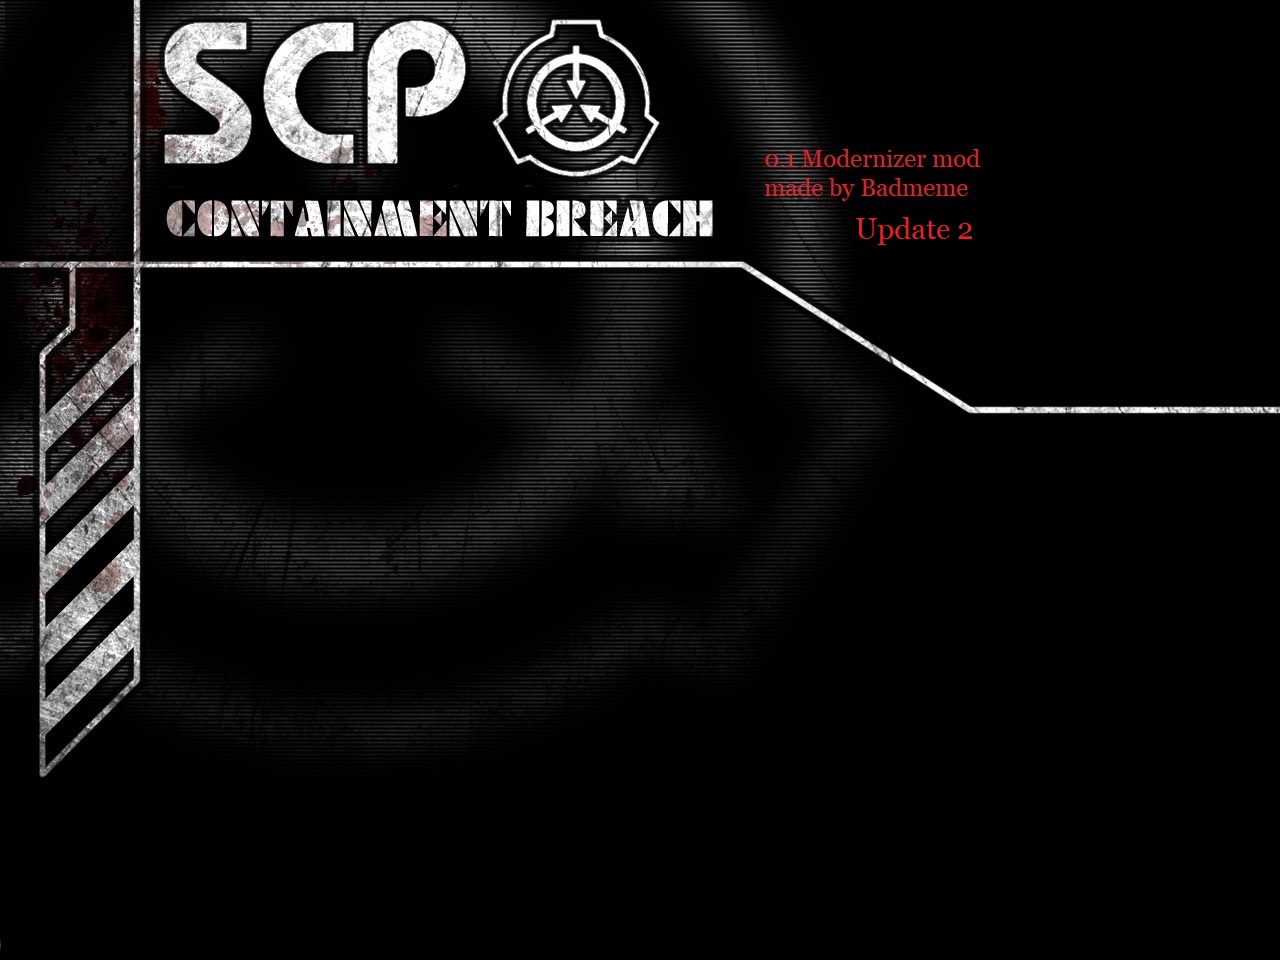 SCP - Containment Breach v0.1 file - IndieDB